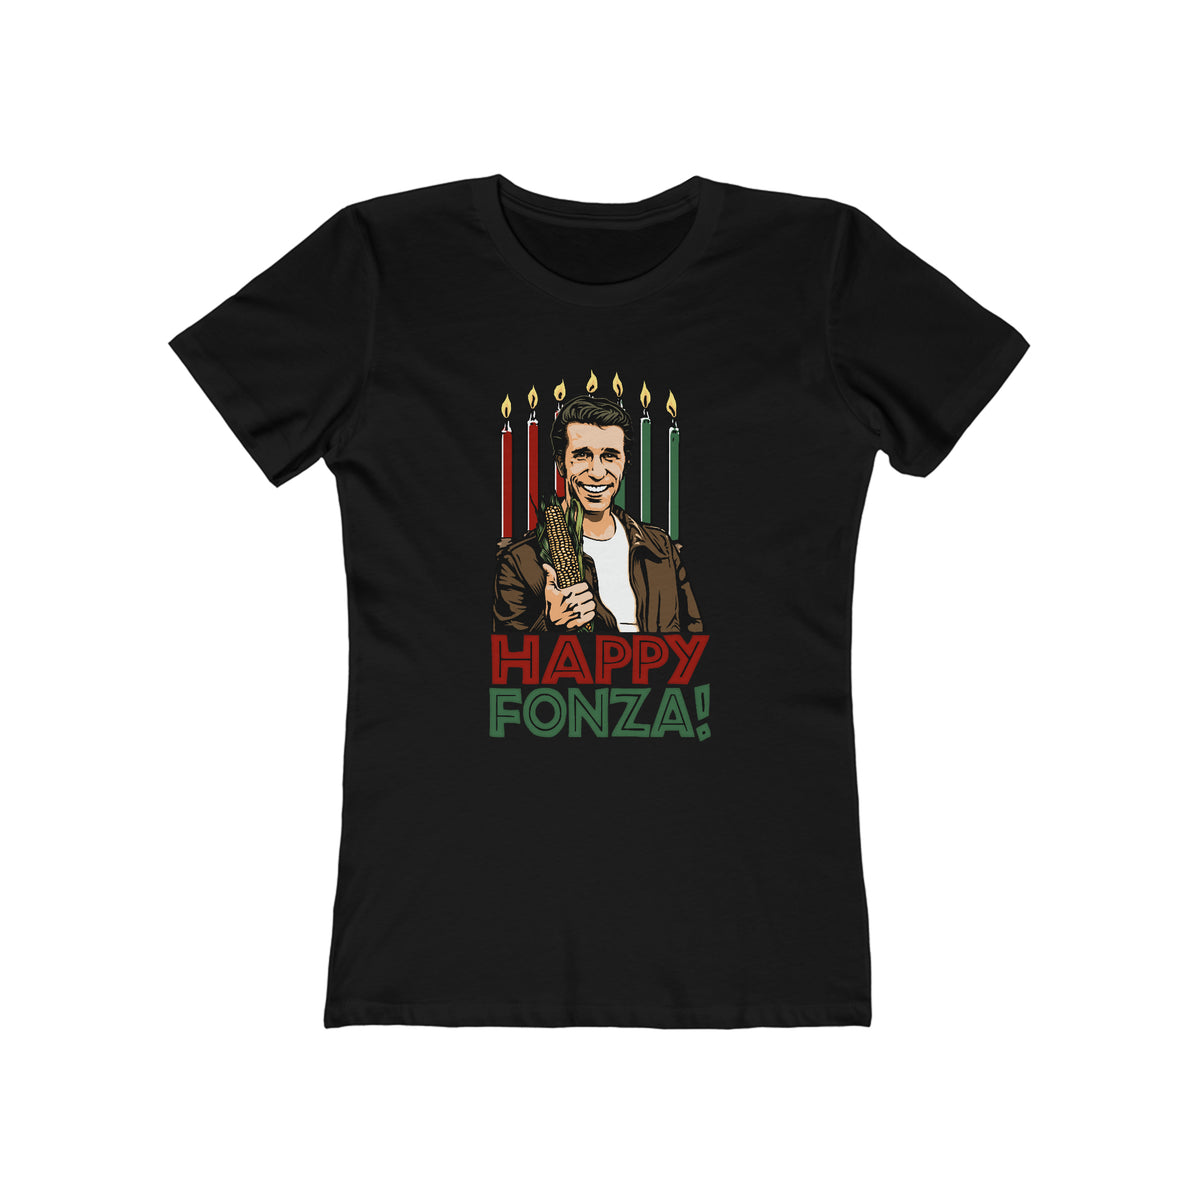 Happy Fonza! - Women’s T-Shirt